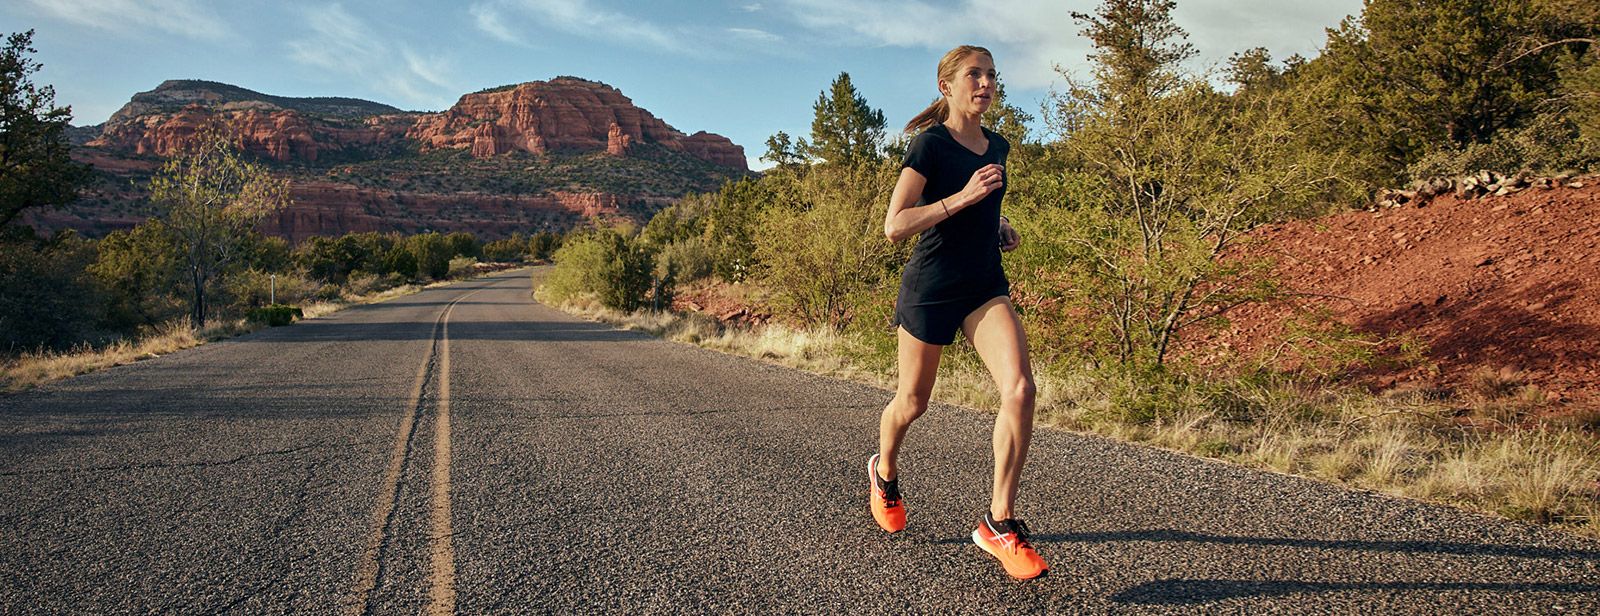 ASICS athlete Sara Hall running in Arizona desert.